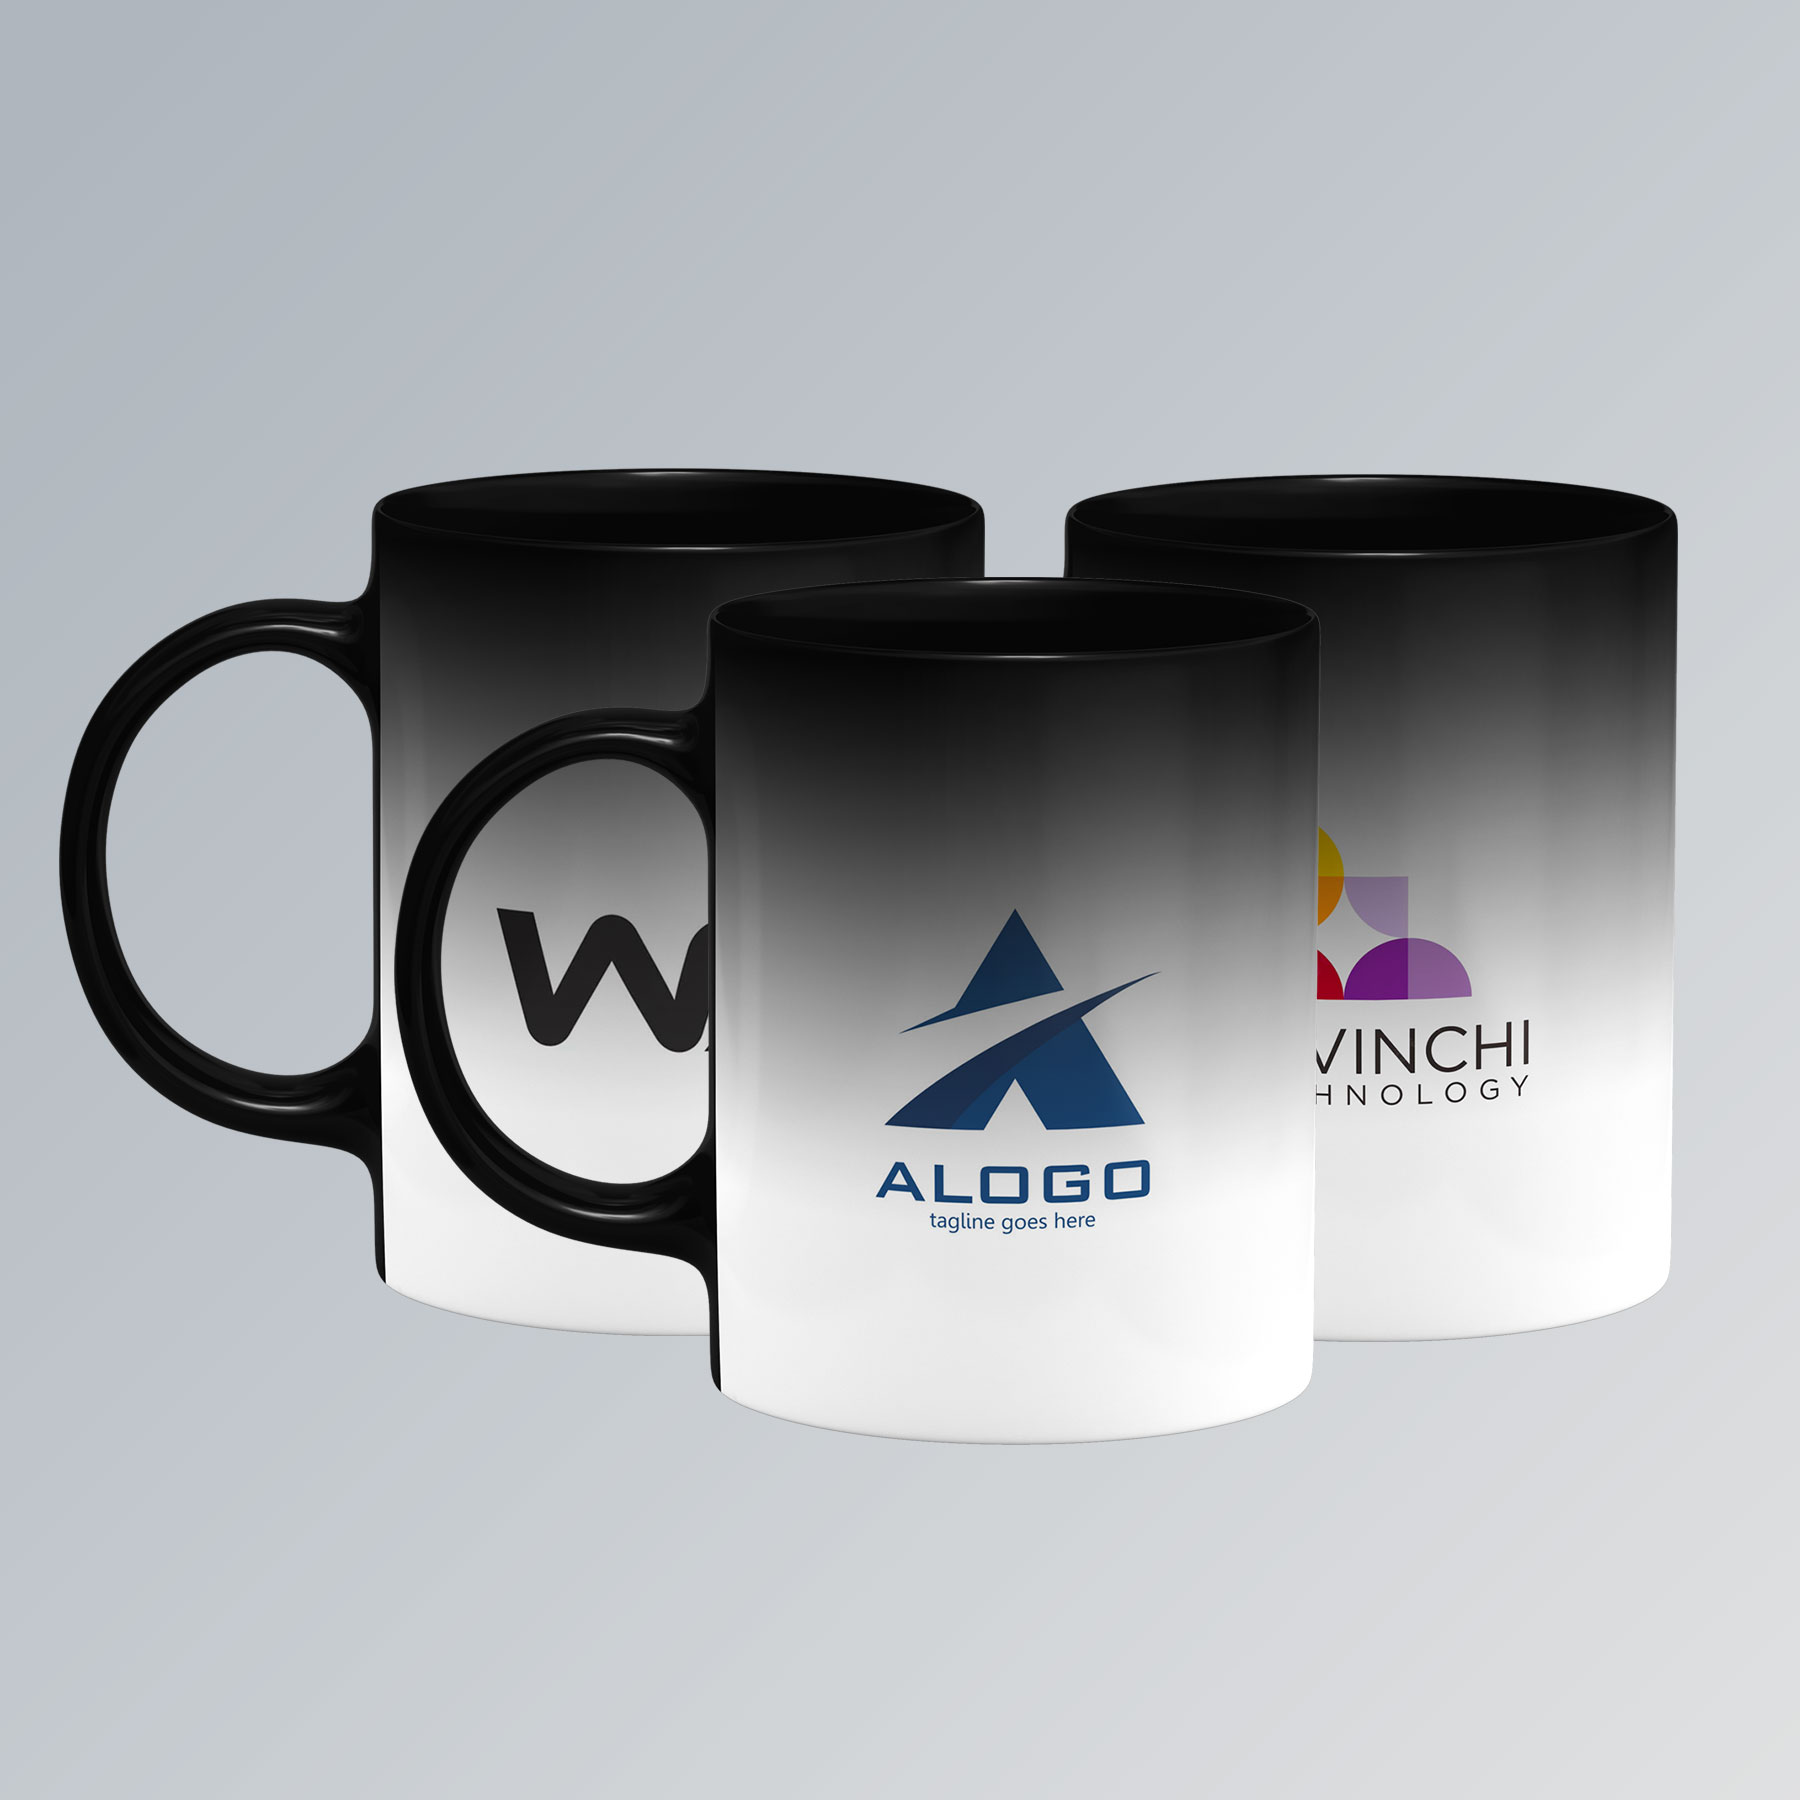 corporate Matte Magic Mug printing Dubai